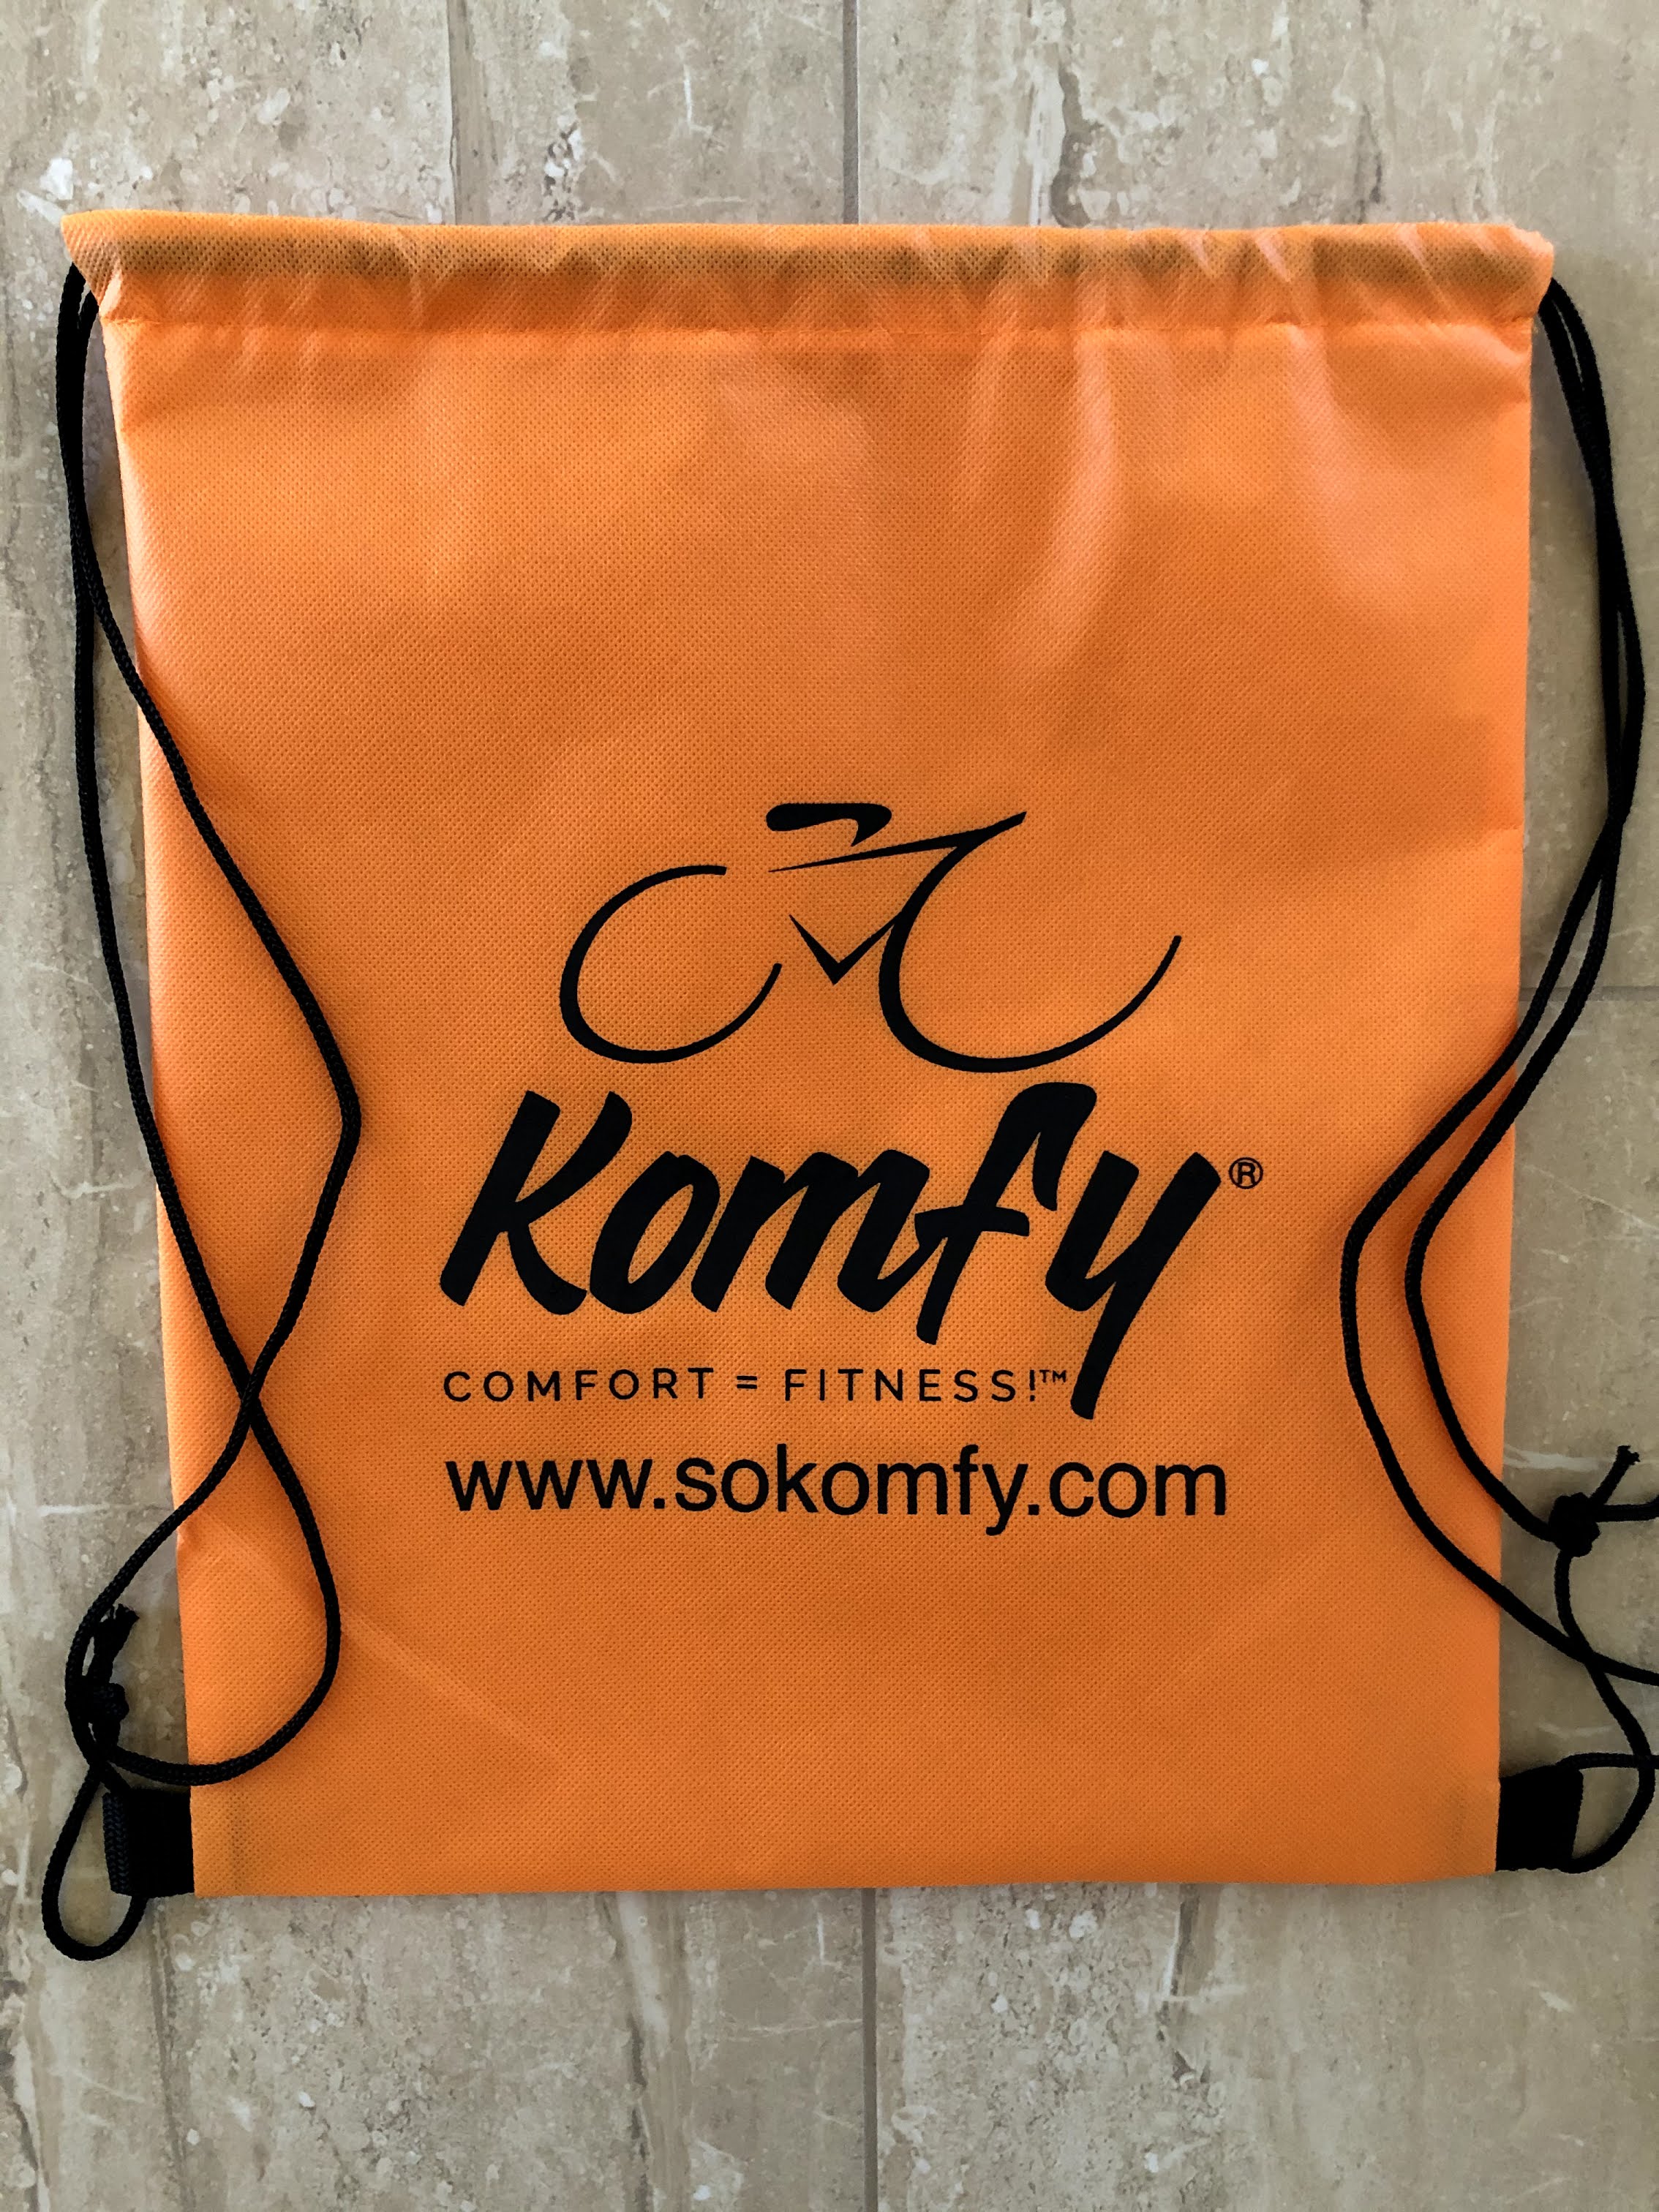 komfy bike seat cover